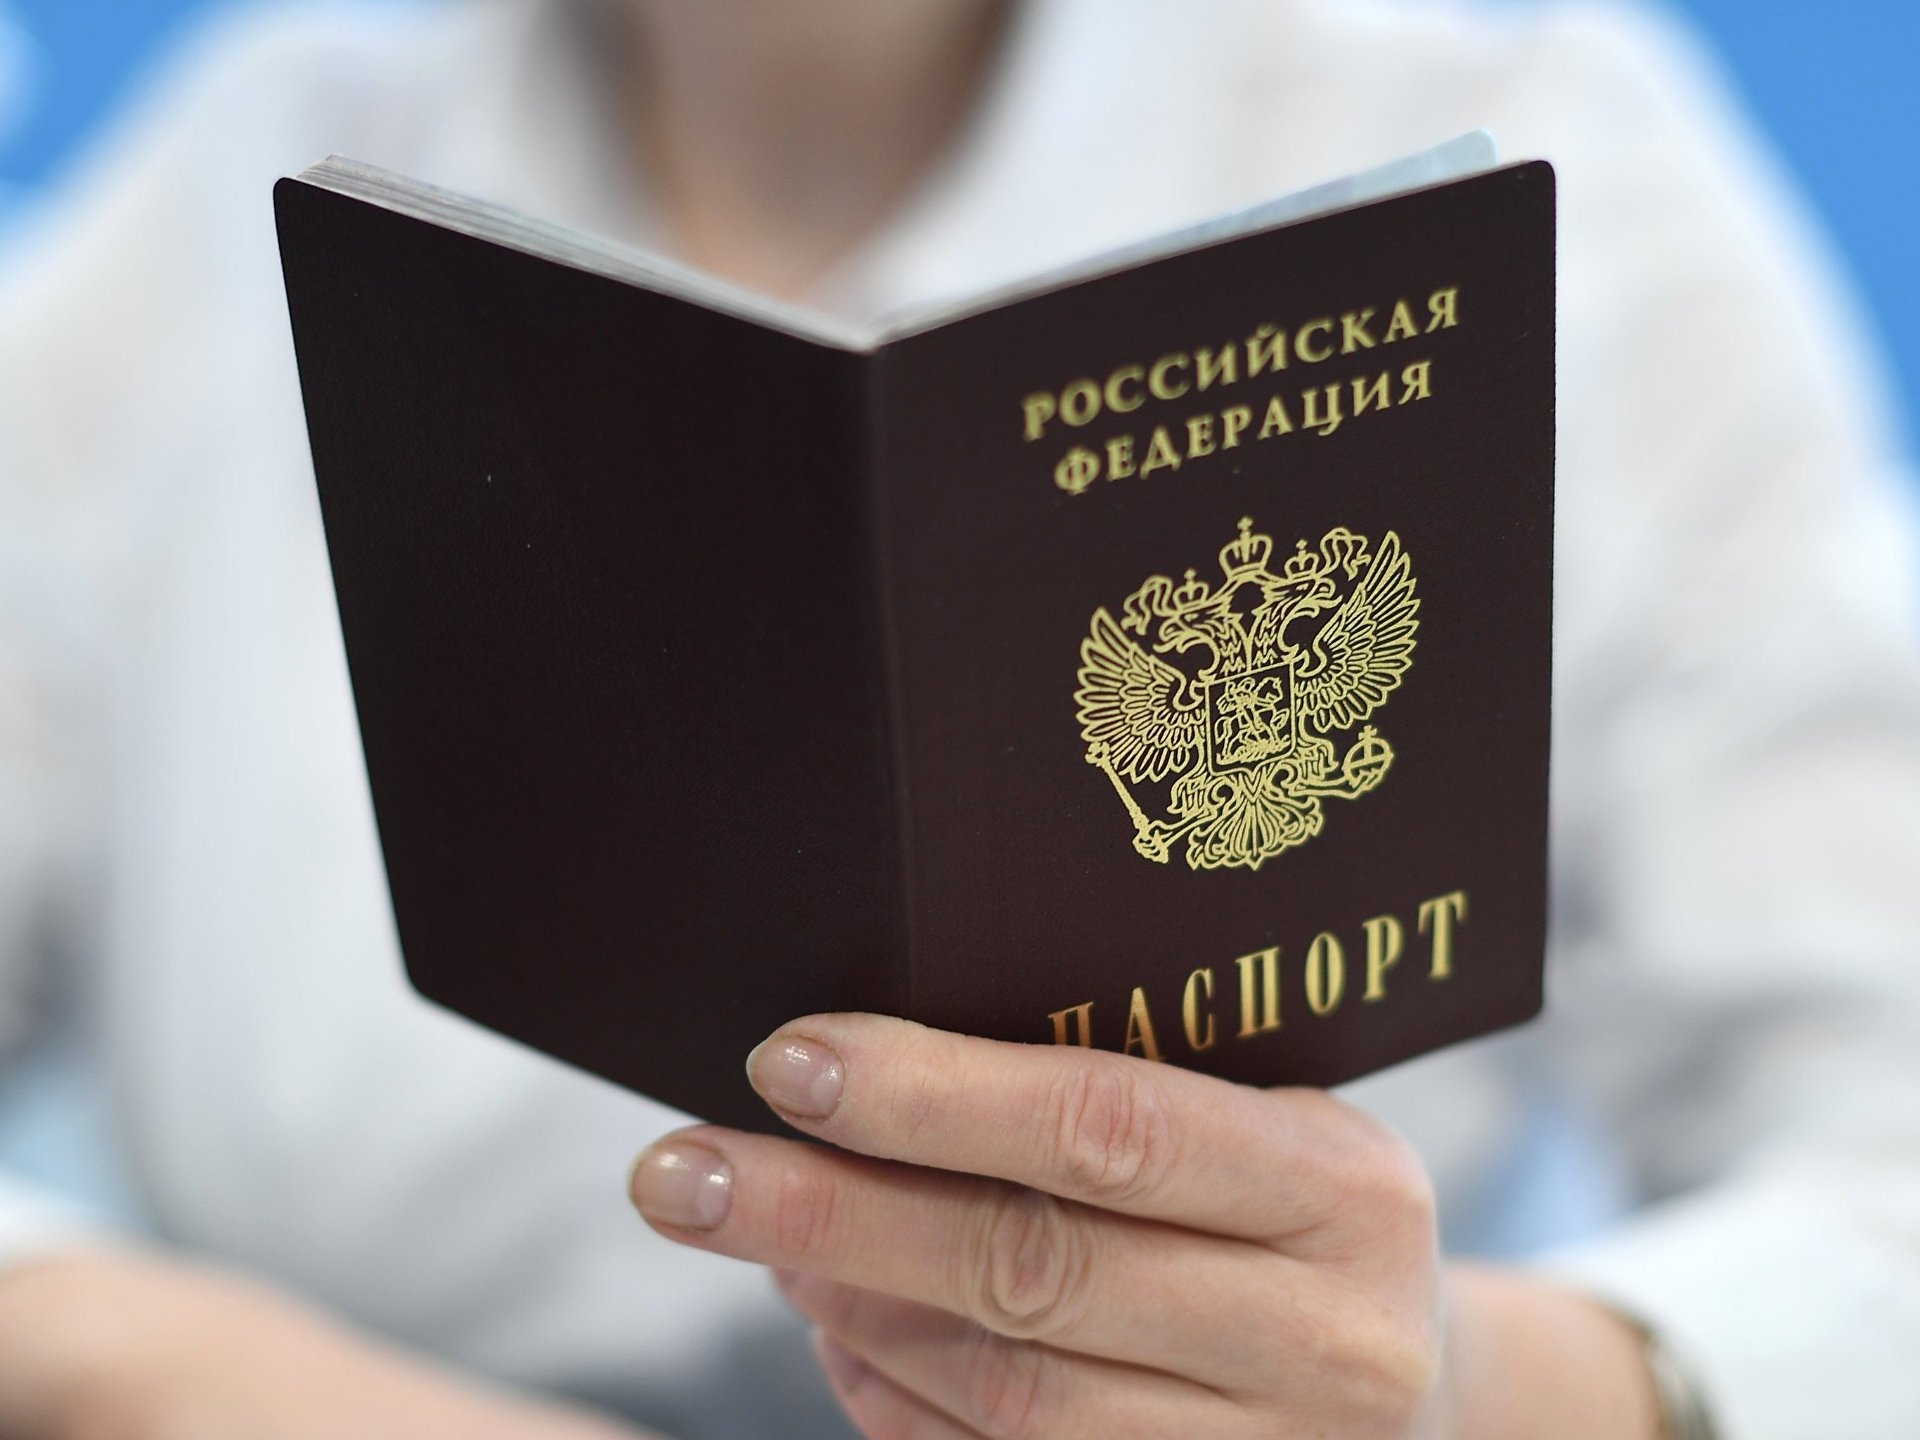 Кредит по паспортным данным без паспорта могут ли взять где взять деньги срочно если банки отказывают в кредите